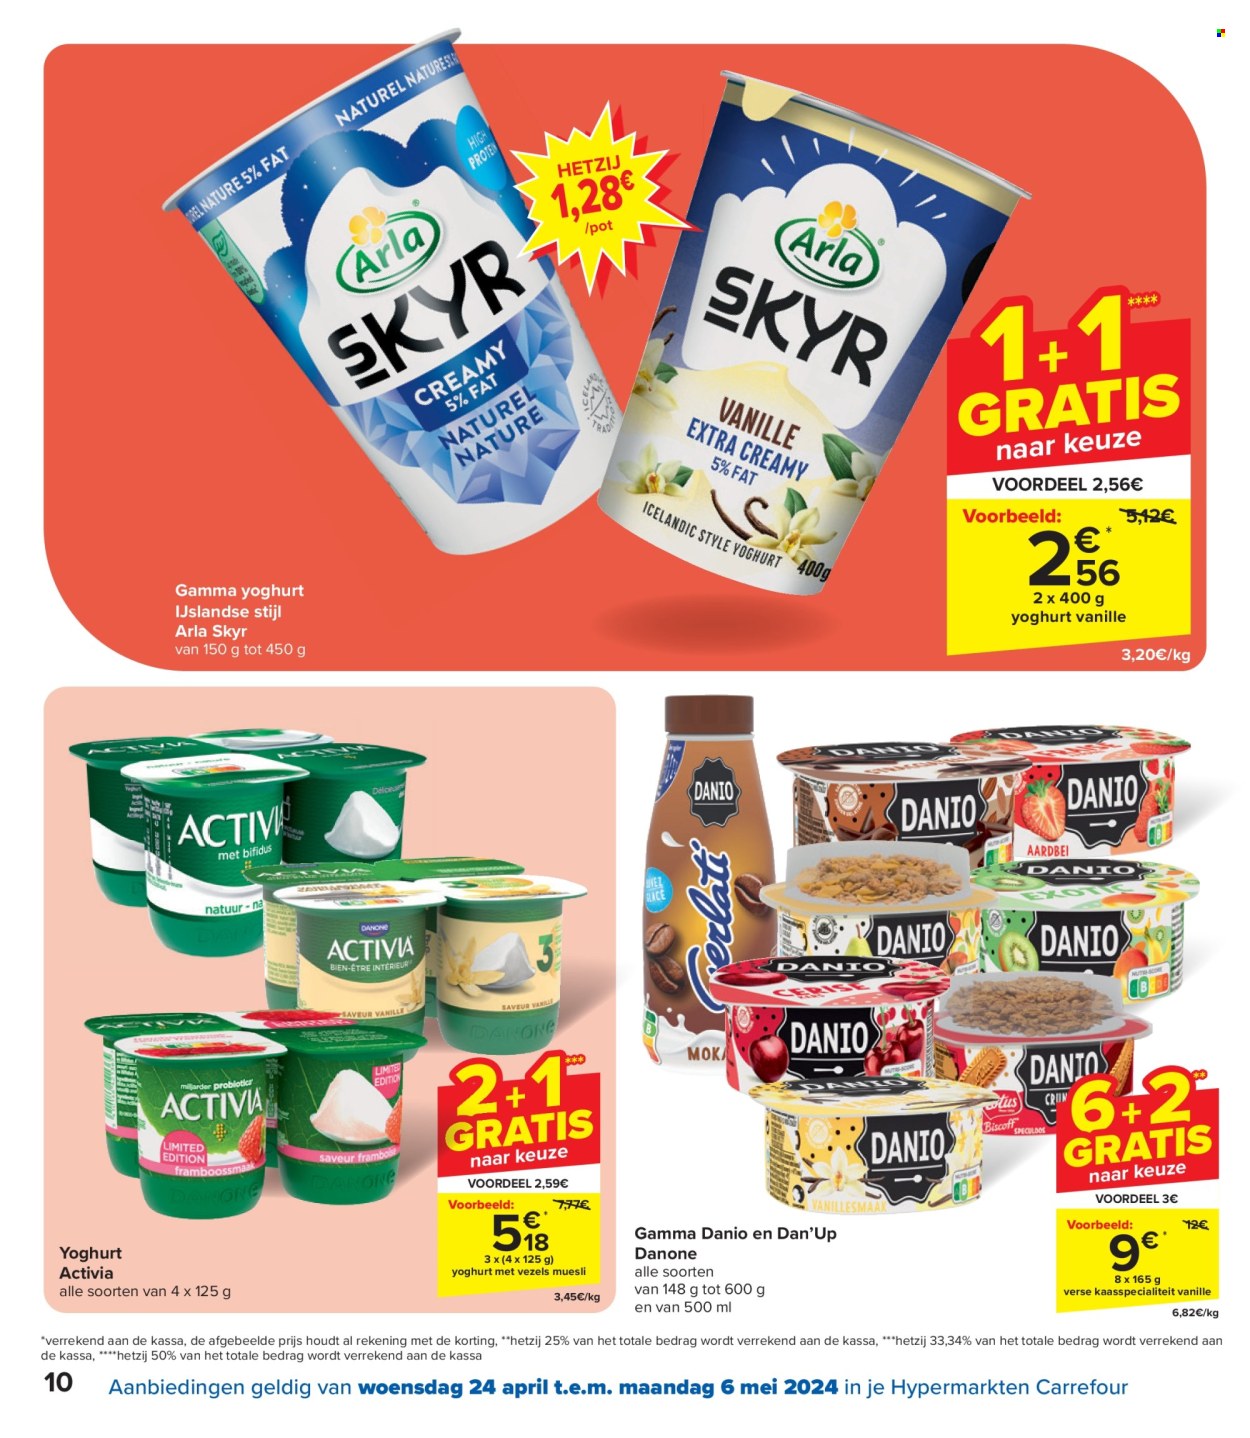 thumbnail - Catalogue Carrefour hypermarkt - 24/04/2024 - 06/05/2024 - Produits soldés - yaourt, Danone, skyr, müsli, céréales, Activia. Page 10.